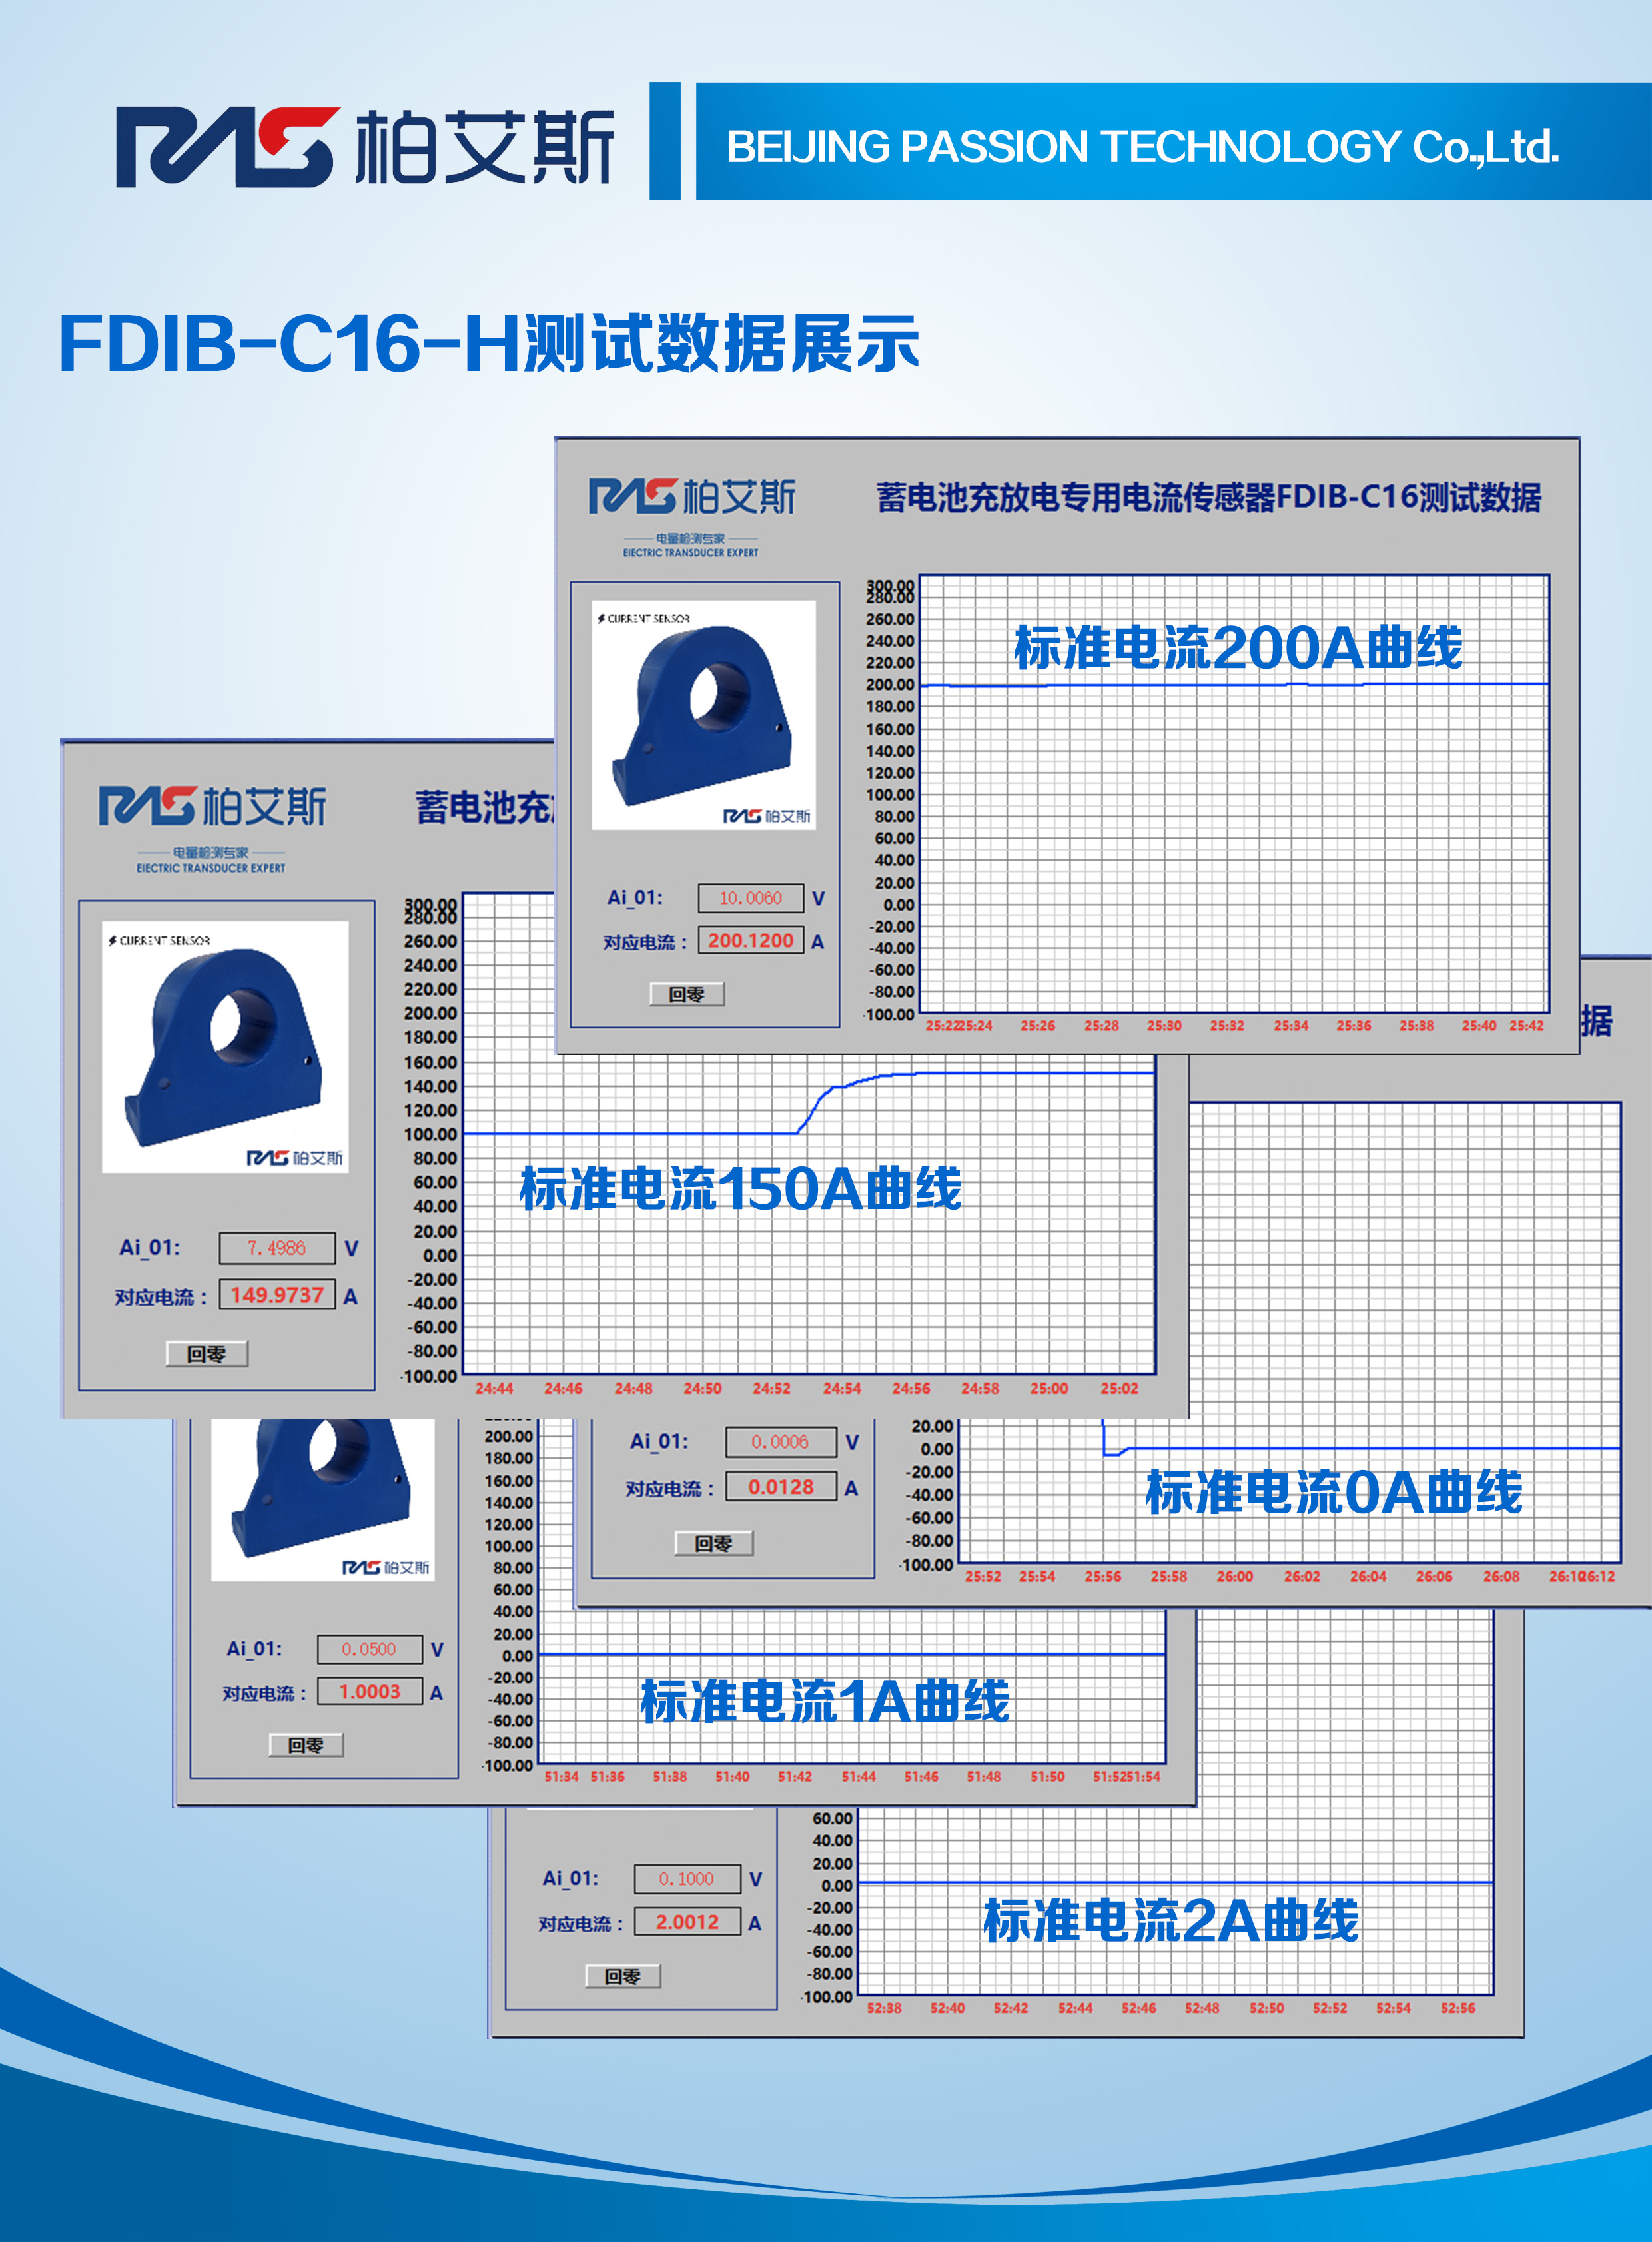 FDIB-C16-H系列曲线图